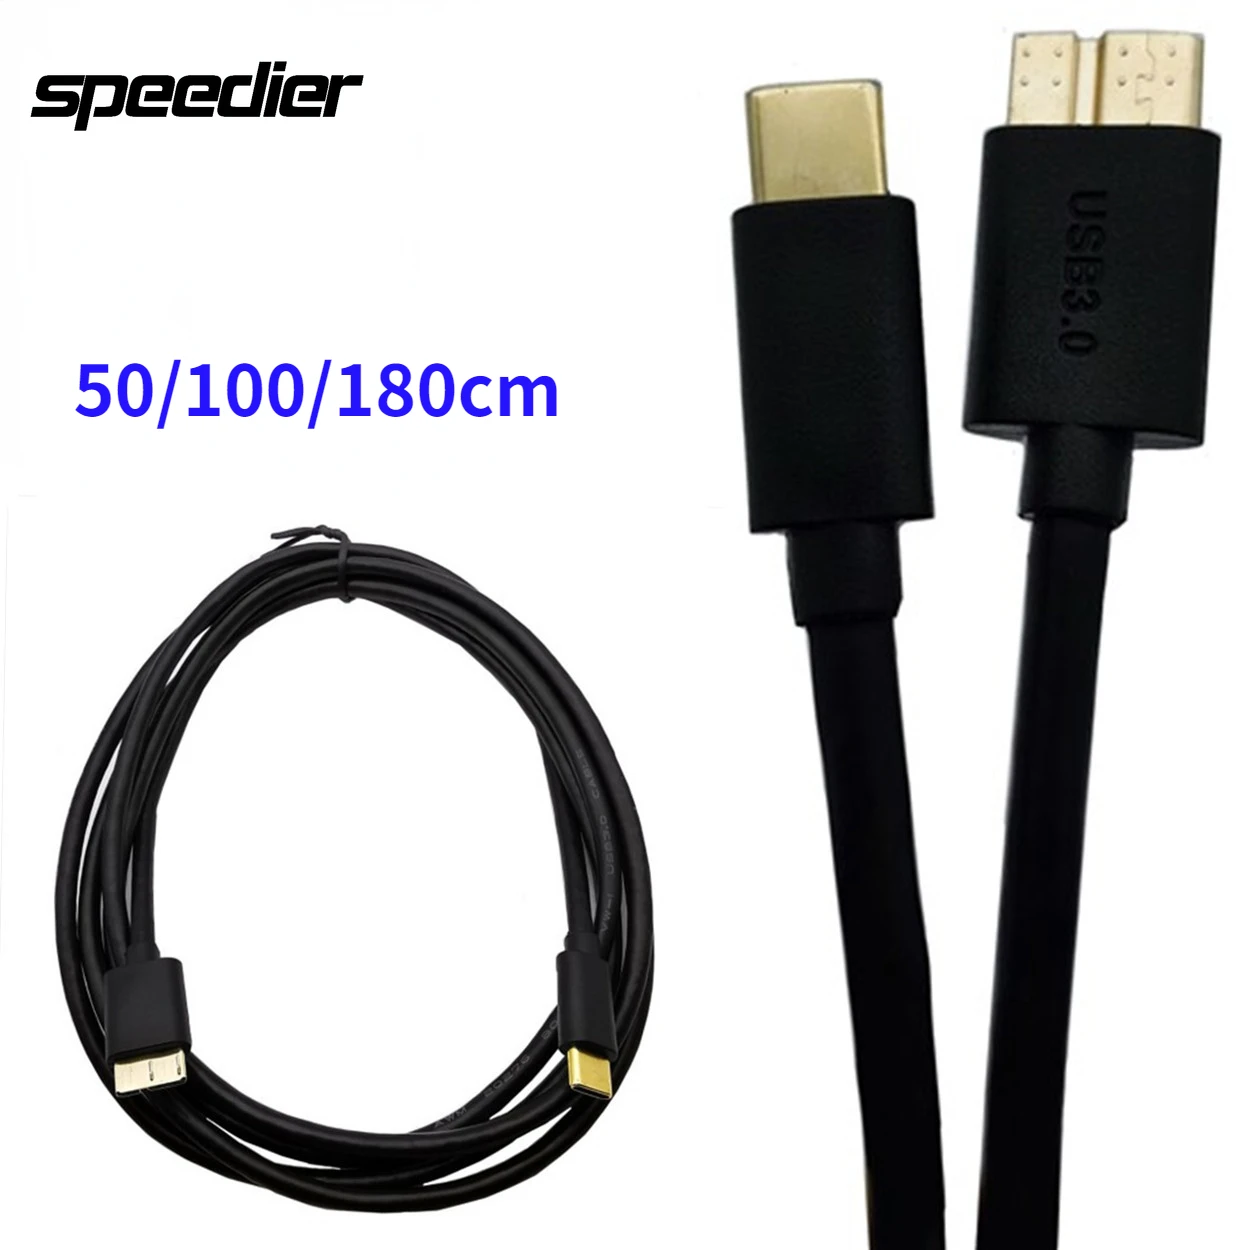 

Новый позолоченный USB 3.1 Type C стандарта USB 3,0 Micro B кабель для передачи данных для Macbook Chromebook Pixel внешний жесткий диск 0,5 м/1 м/1,8 м